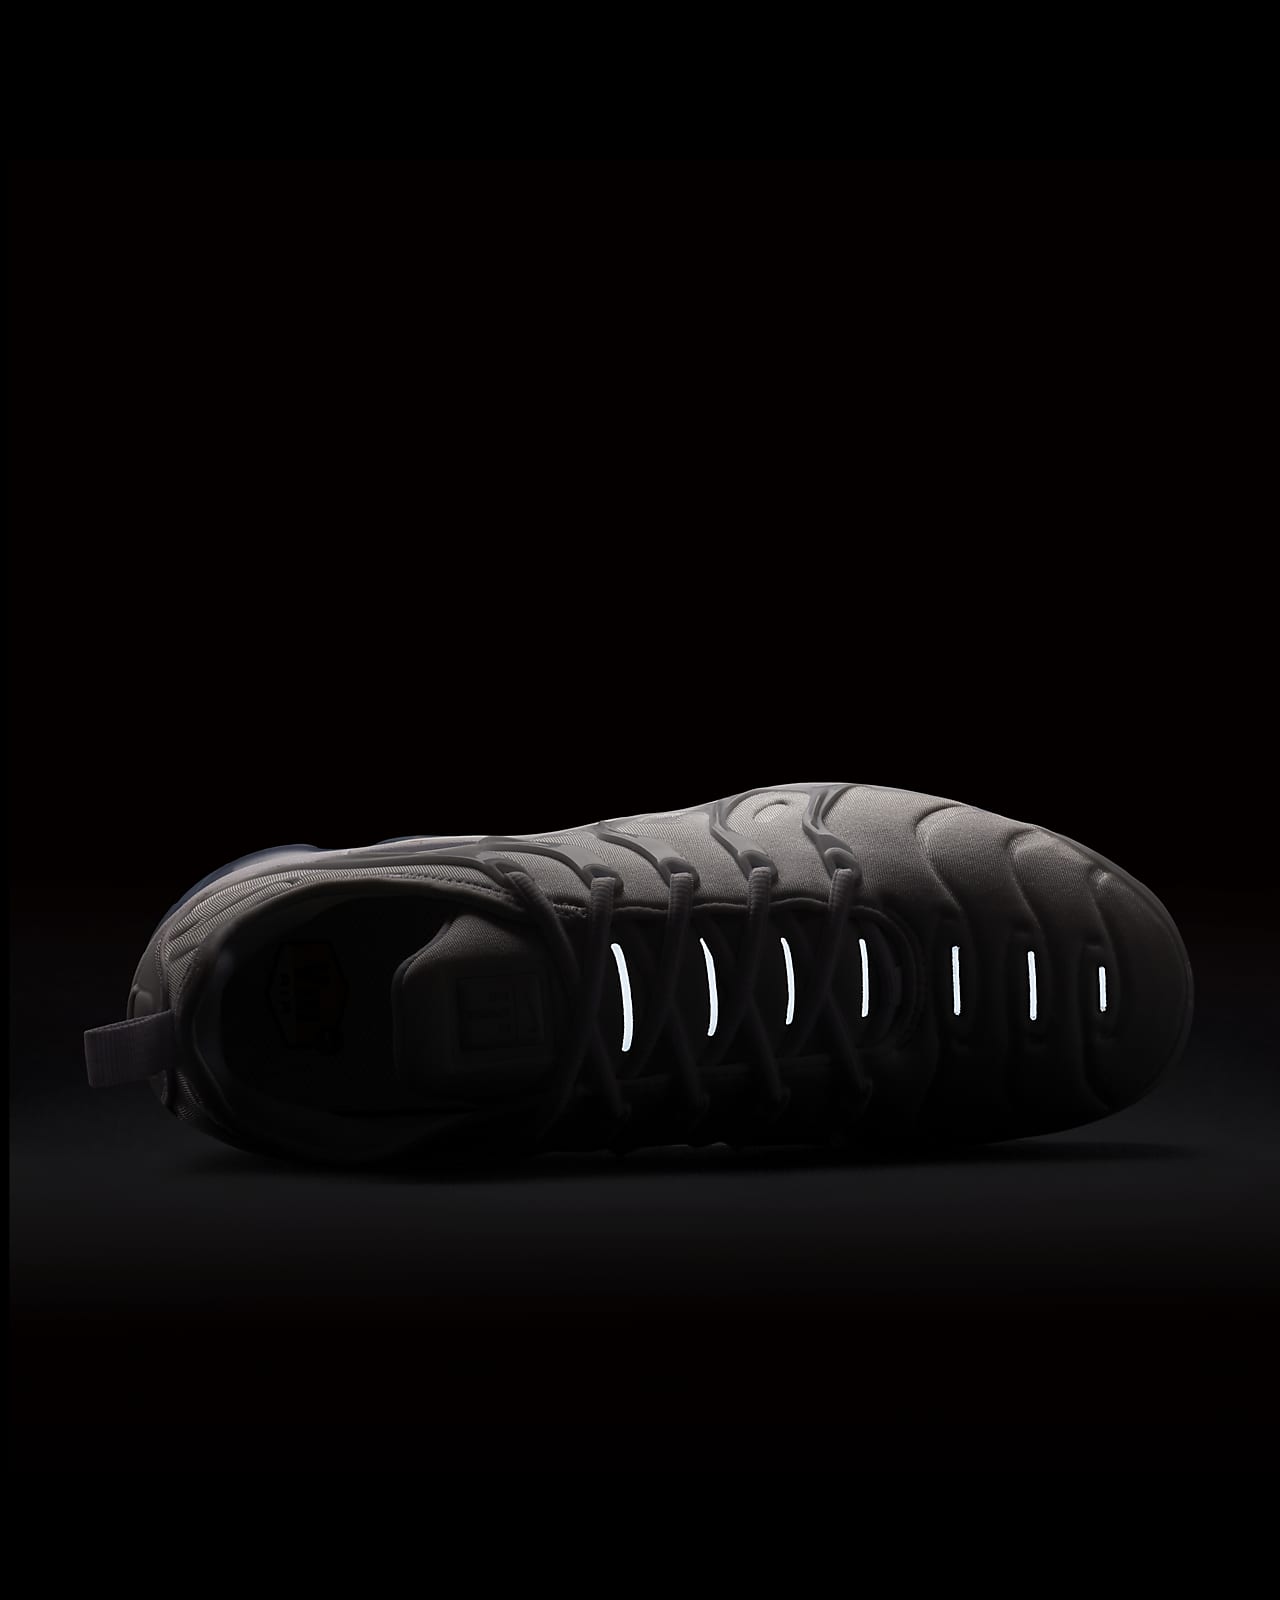 Calzado para hombre Nike Air VaporMax Plus. Nike.com اعواد اذاني